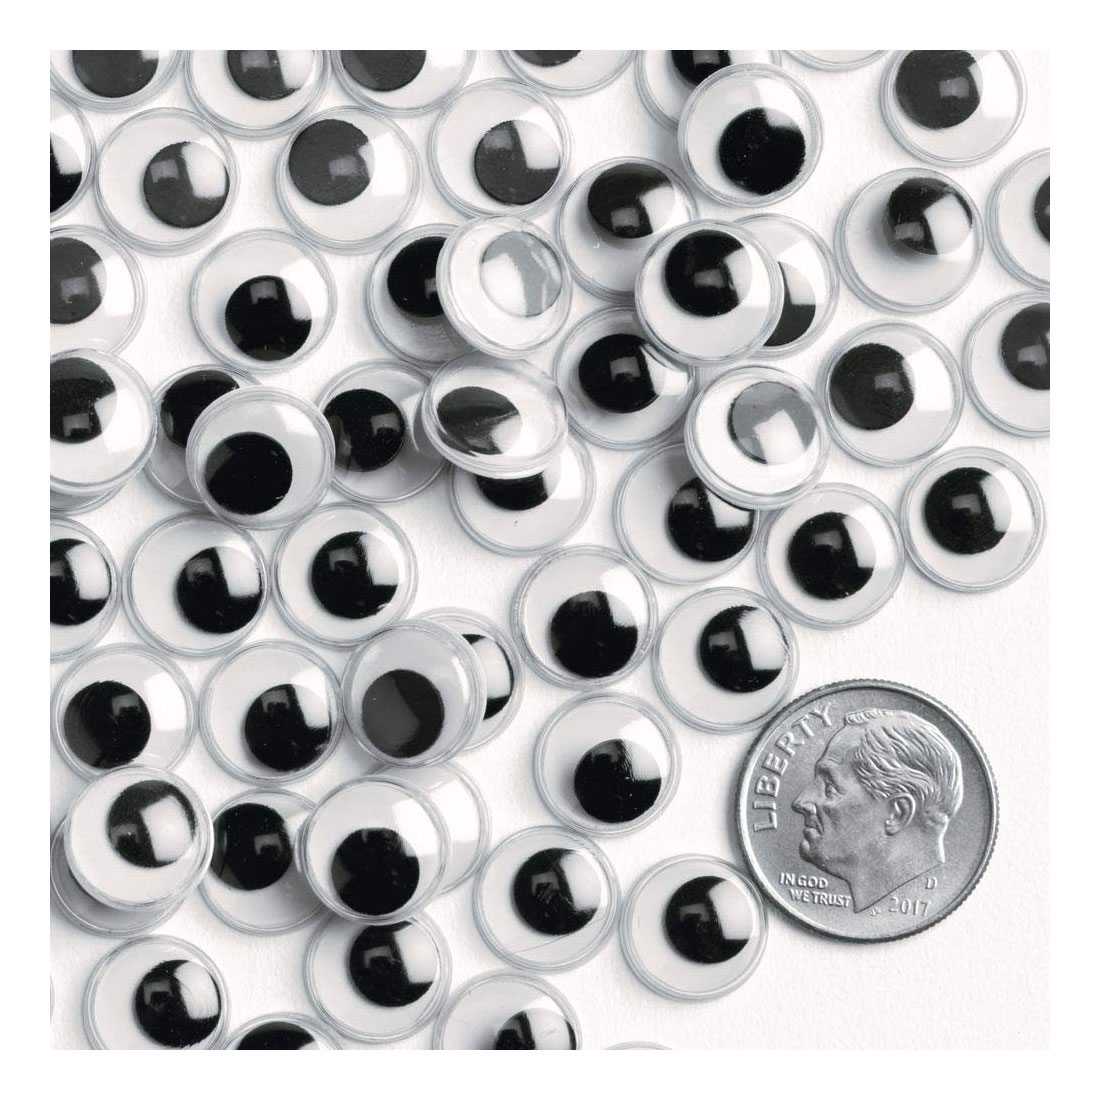 Colorations - Yeux mobiles noirs, 1000 pièces.